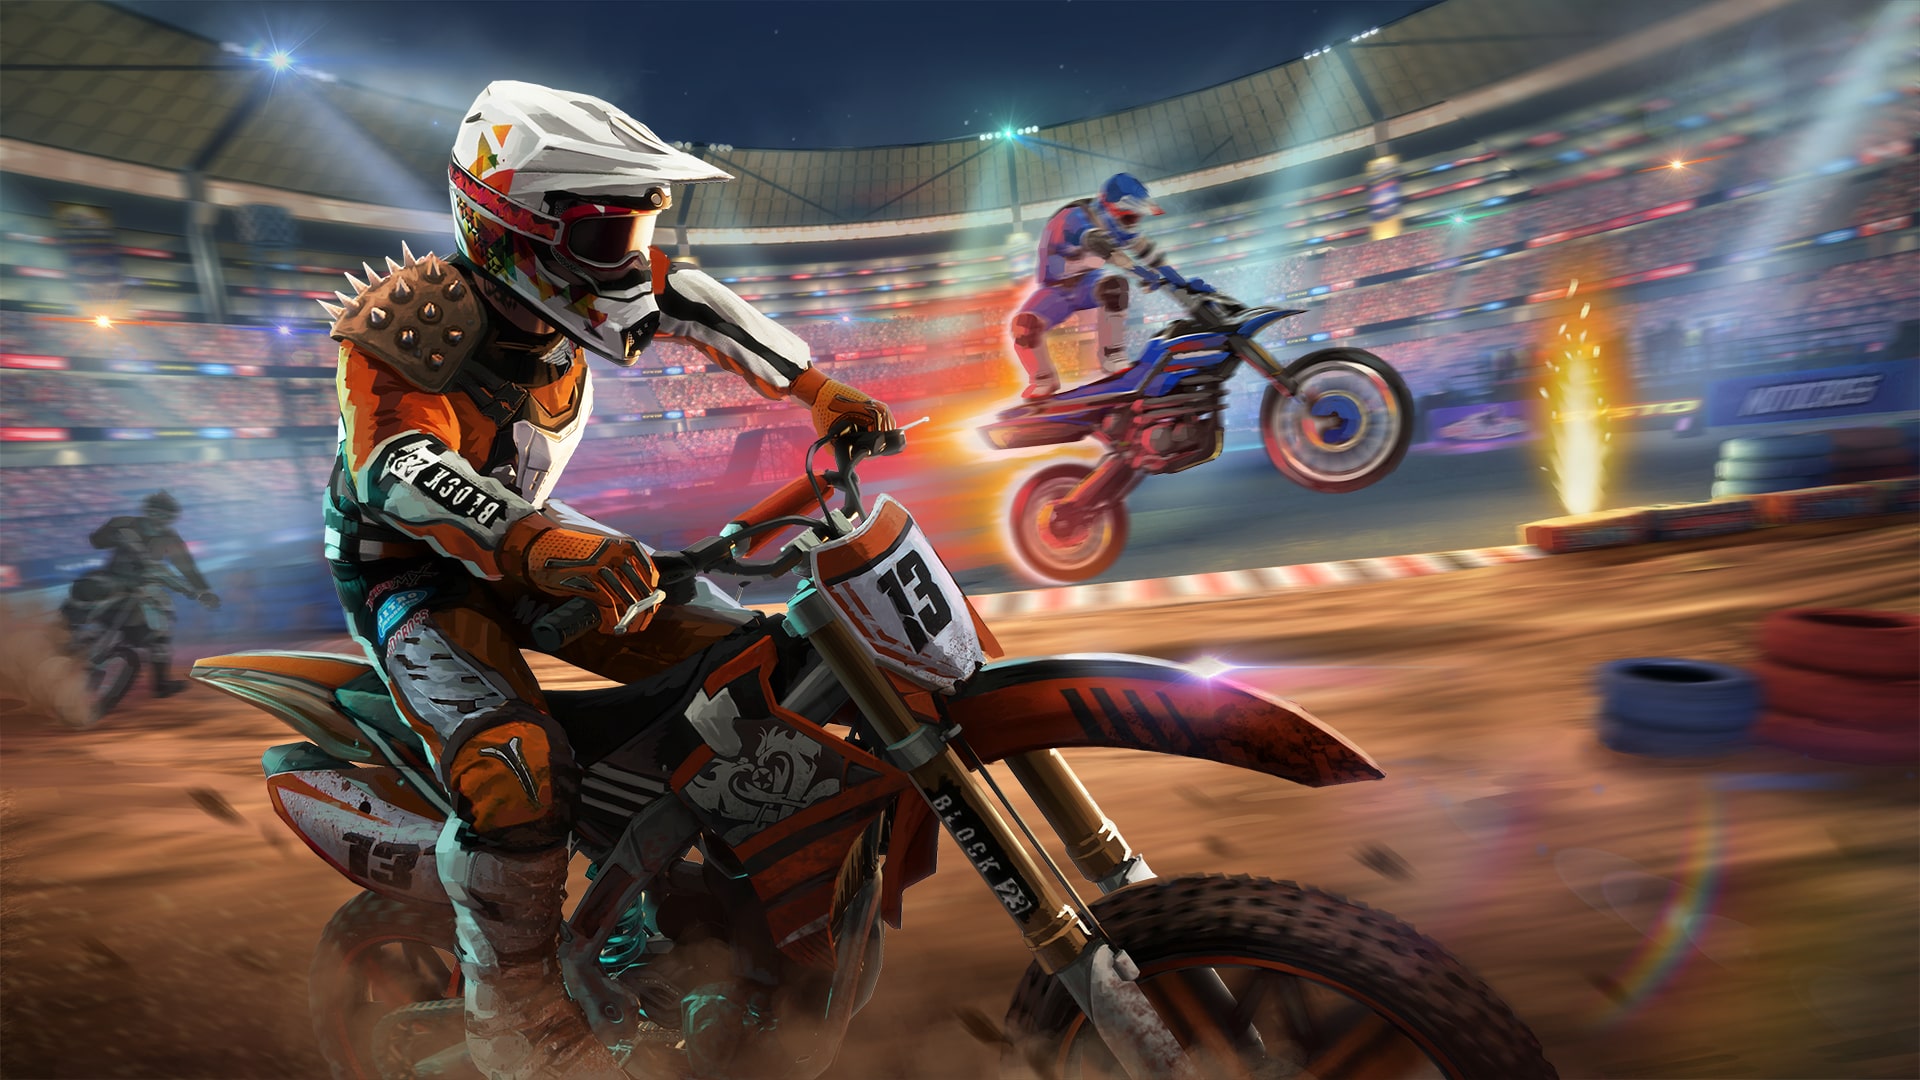 Jogo de motocross chega para PC e consolas em fevereiro - MX Nitro -  Gamereactor